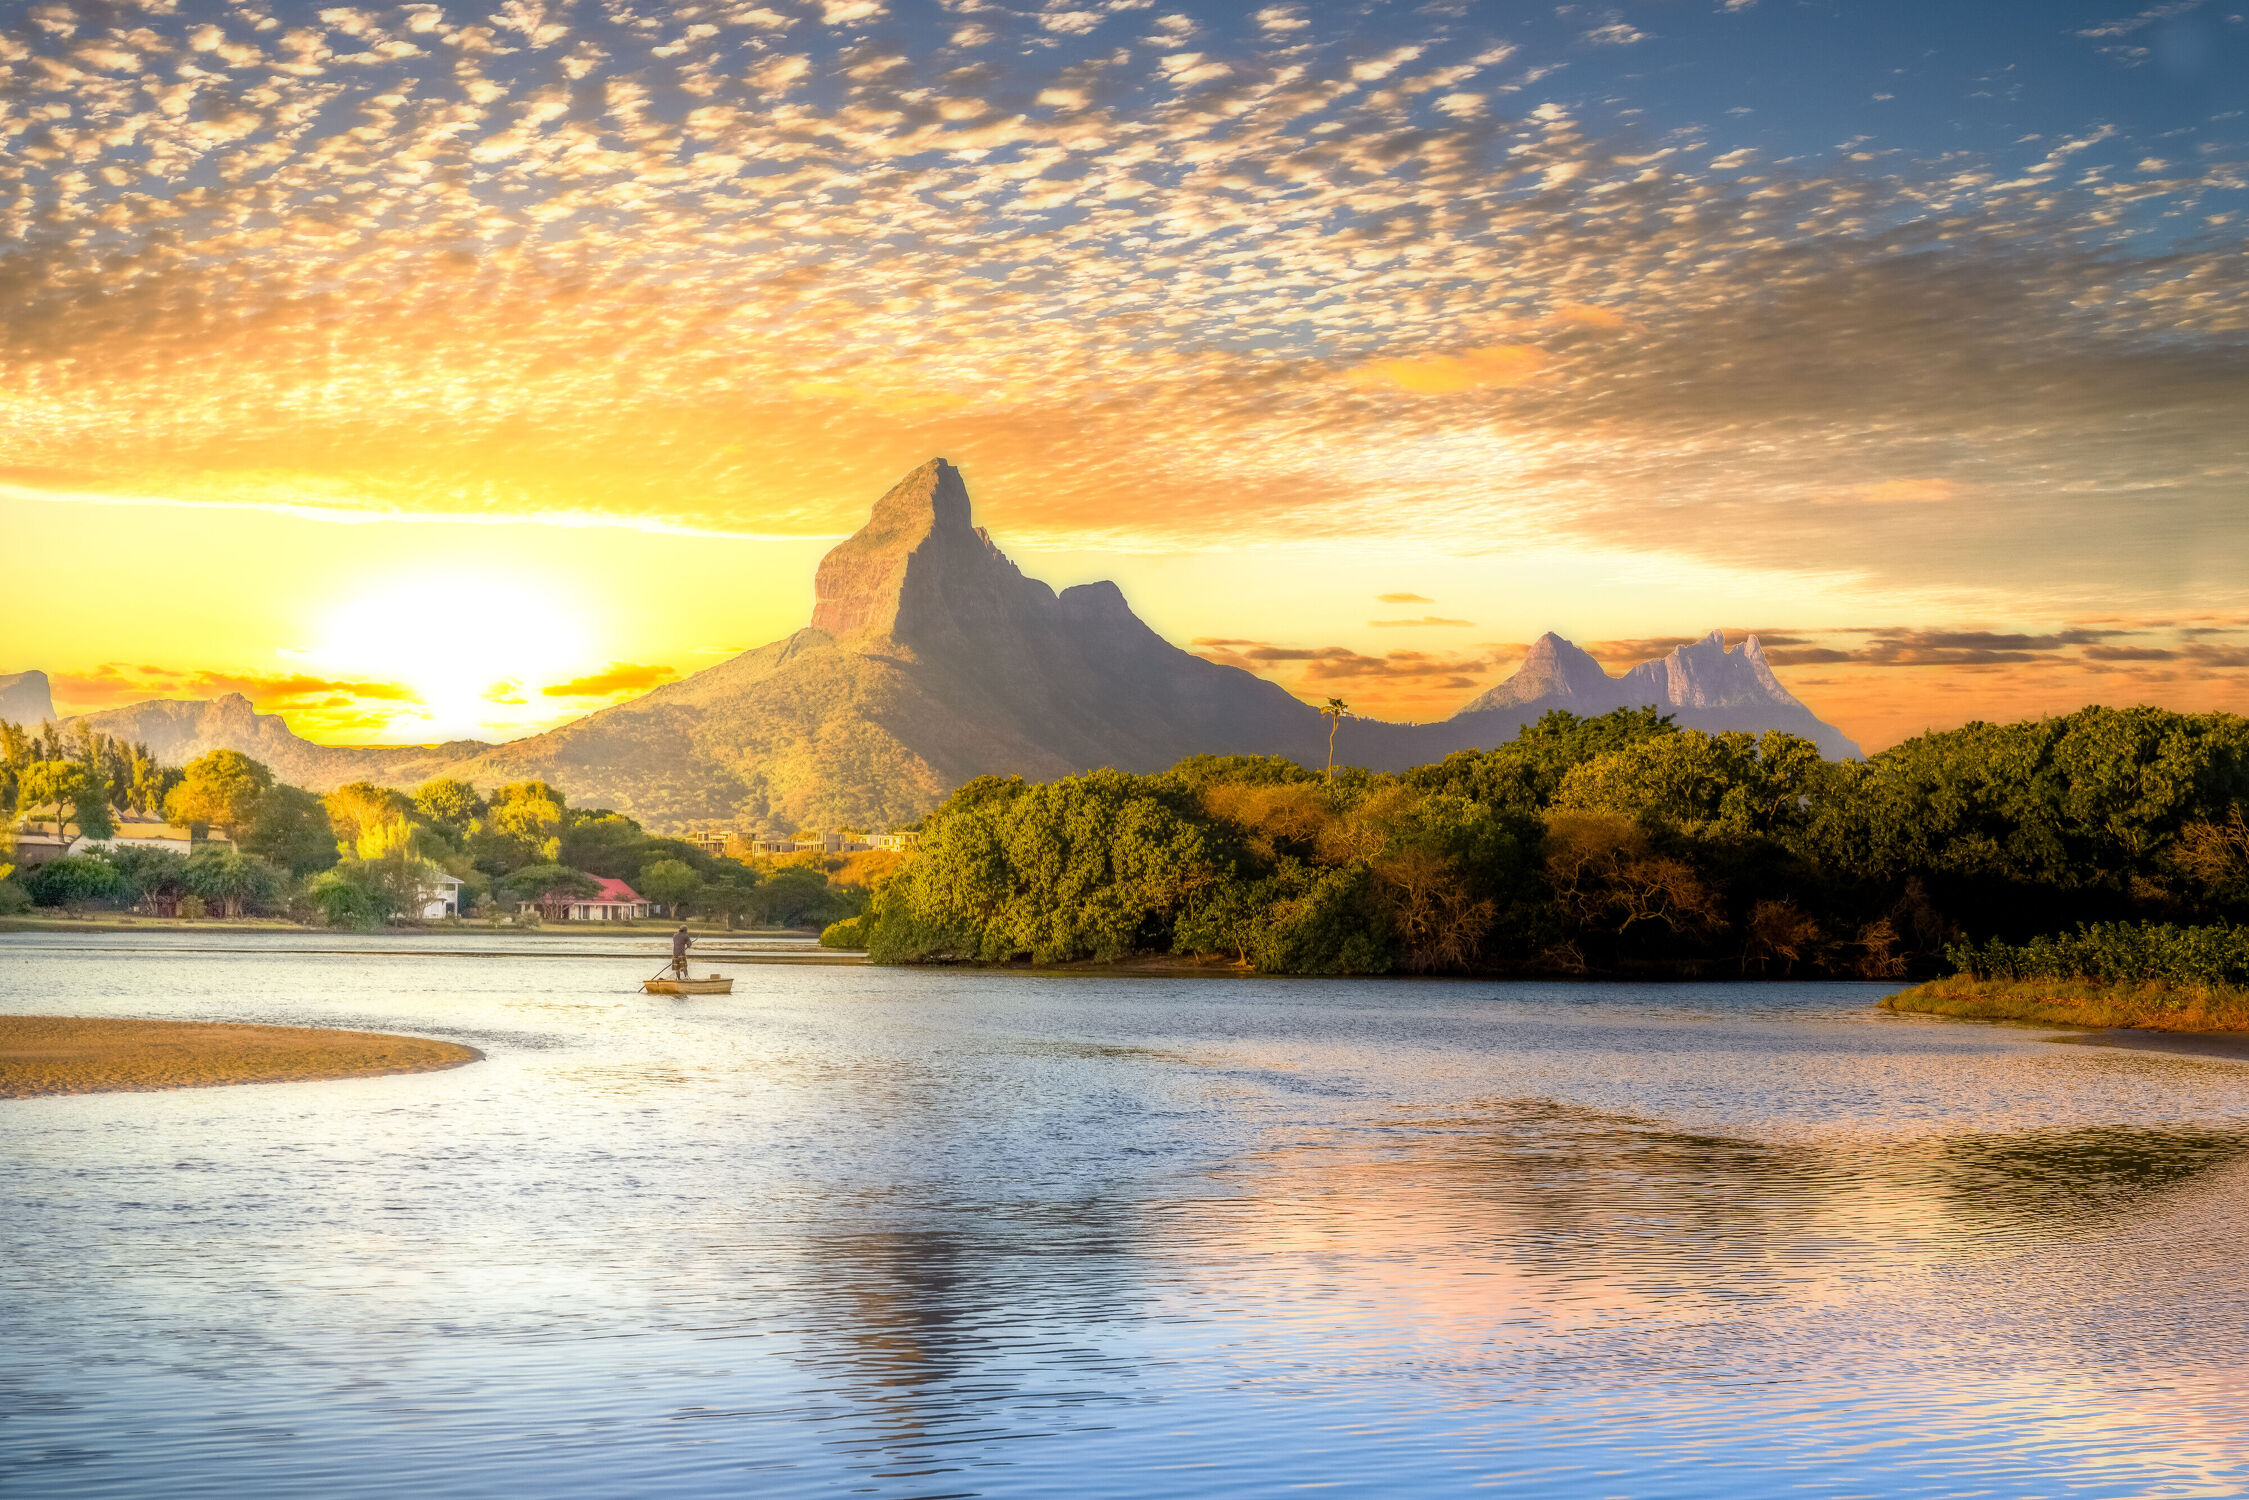 Bild mit Natur, Landschaften, Sonnenuntergang, Strand, Stadt, Fluss, Fischer, Bucht, Mauritius, Tamarin